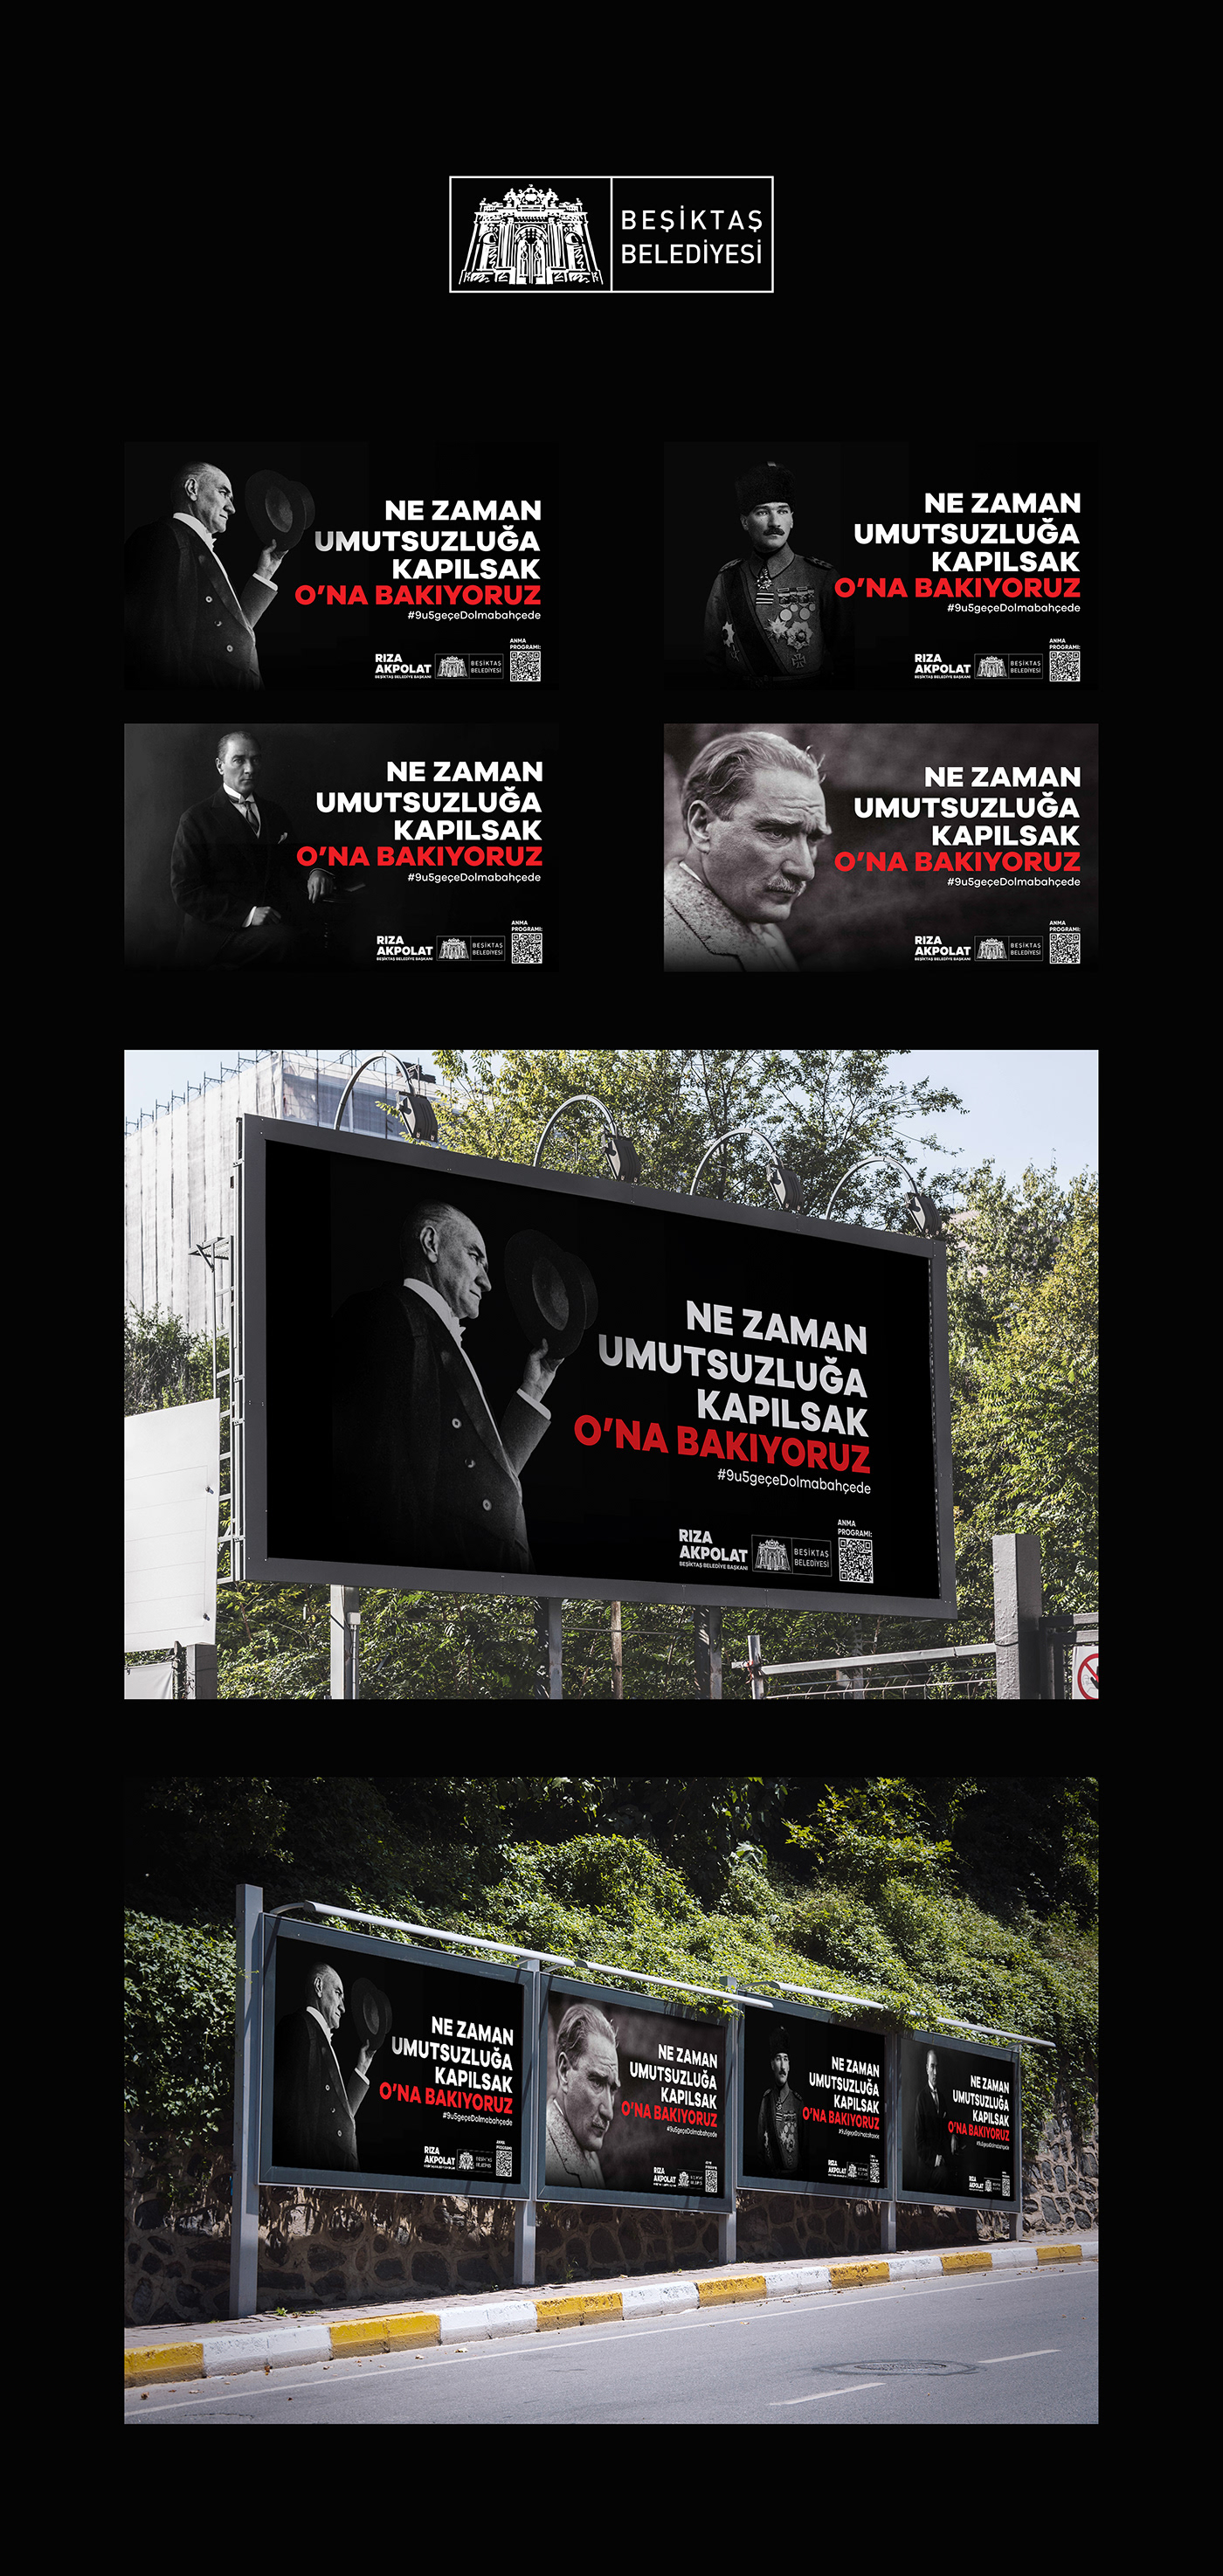 10kasım afiştasarımı Ataturk Beşiktaş beşiktaşbelediyesi billboard design grafiktasarım mustafakemalatatürk posterdesign tasarım